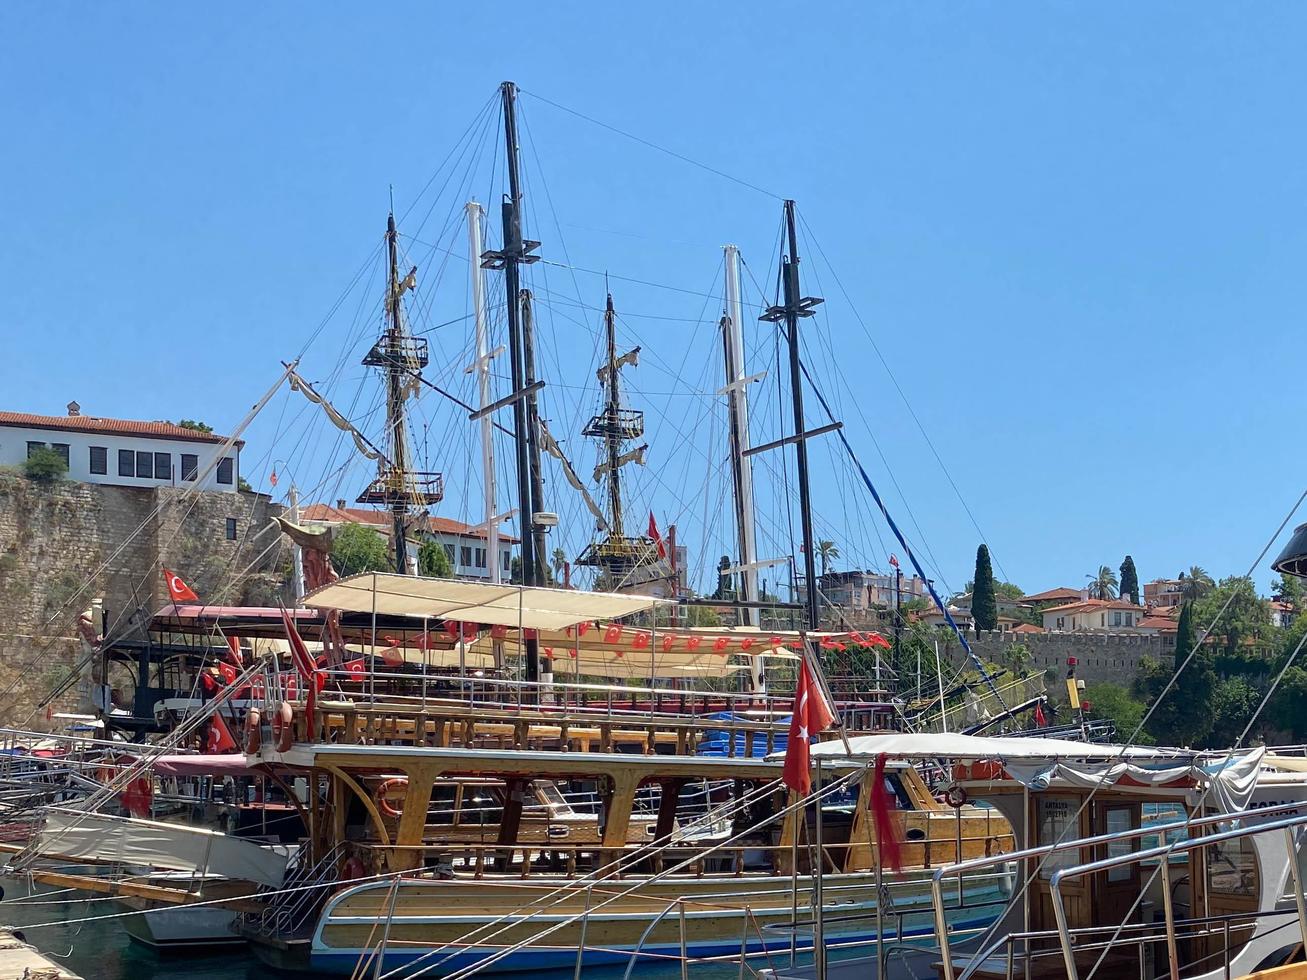 antalya, Kalkon - juli, 2021 årgång mast trä- segling fartyg för hav turer. turistiska pirat fartyg i hamn. marina i gammal stad kaleici distrikt i tillflykt stad antalya, Kalkon. gammal hamn i antalya foto